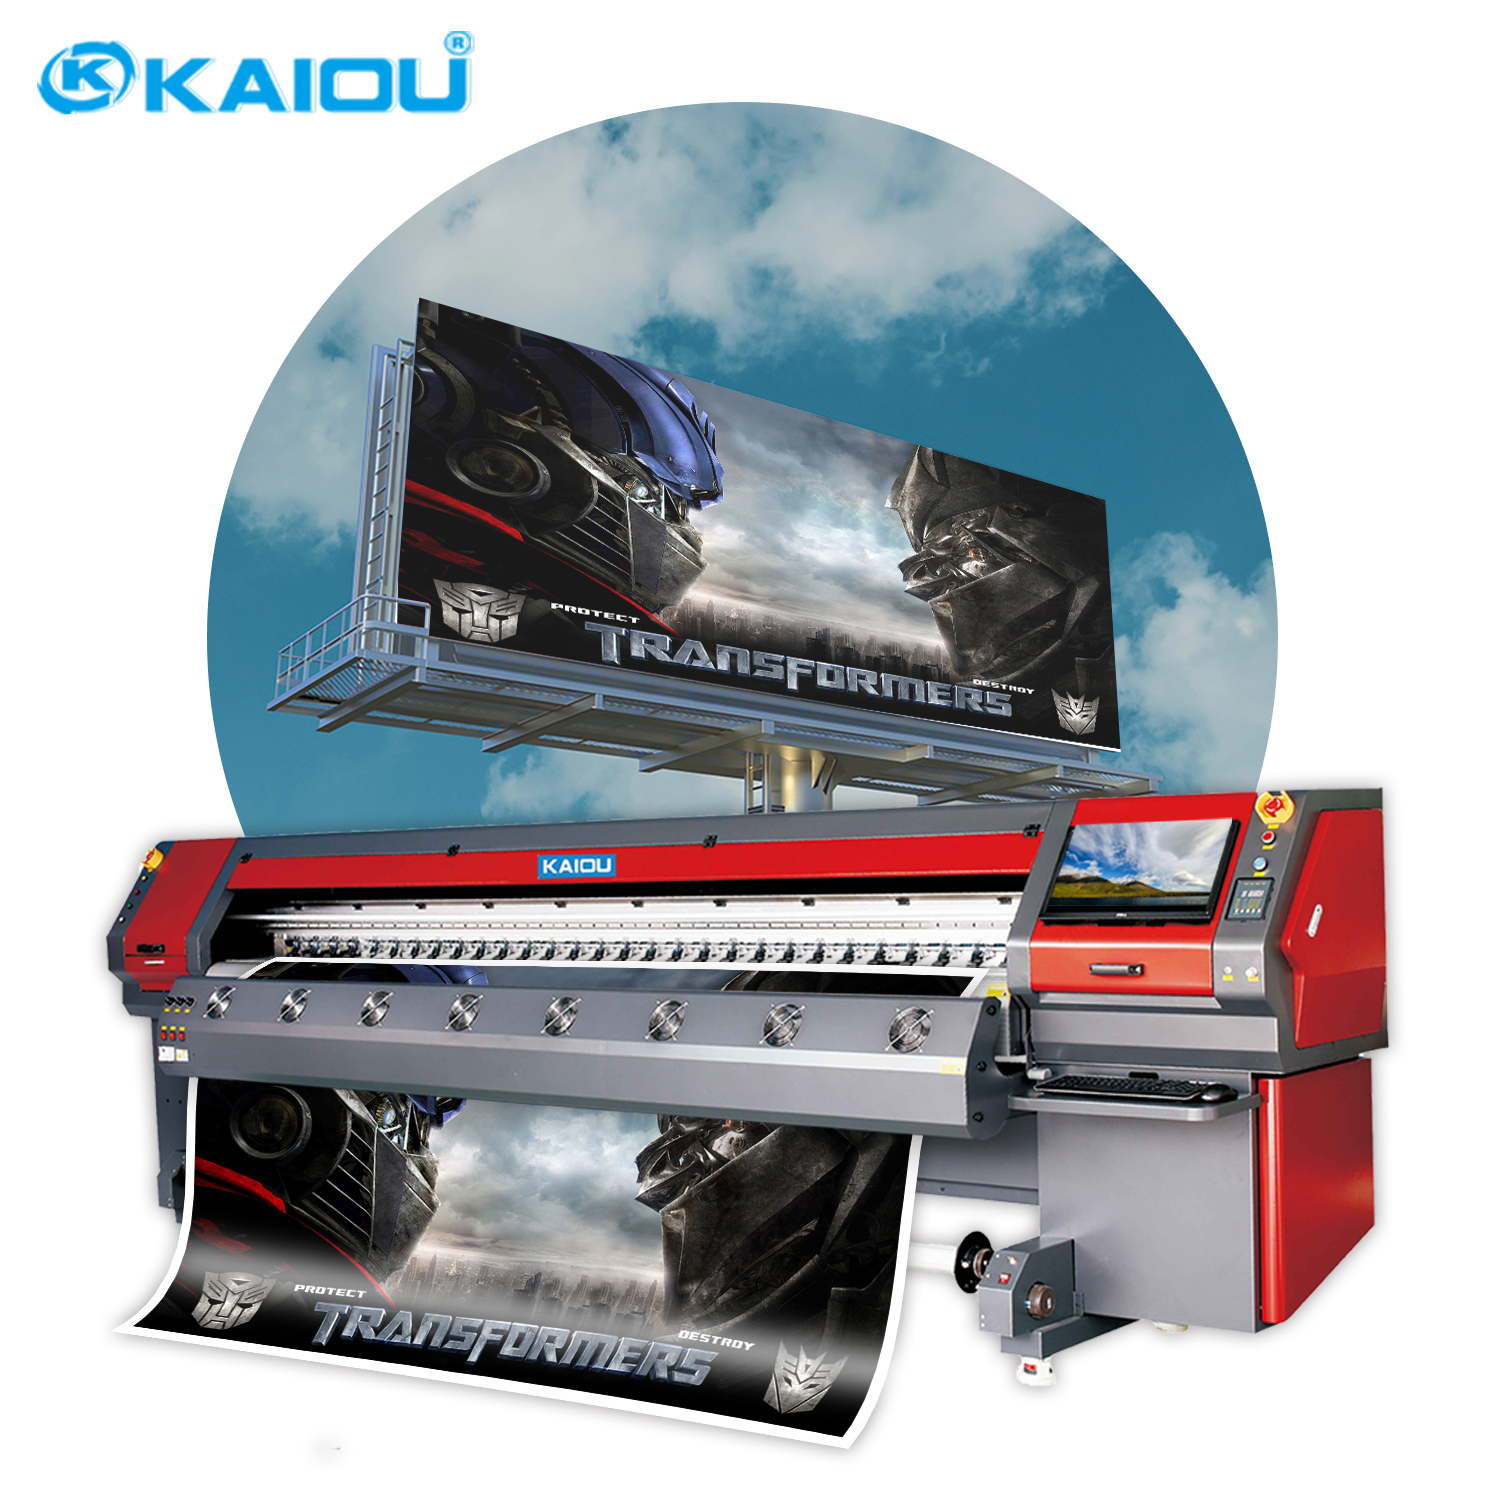 KAIOU Solvent-Drucker mit großer Plattform und 3,2 m Druckbreite für den Außenbereich